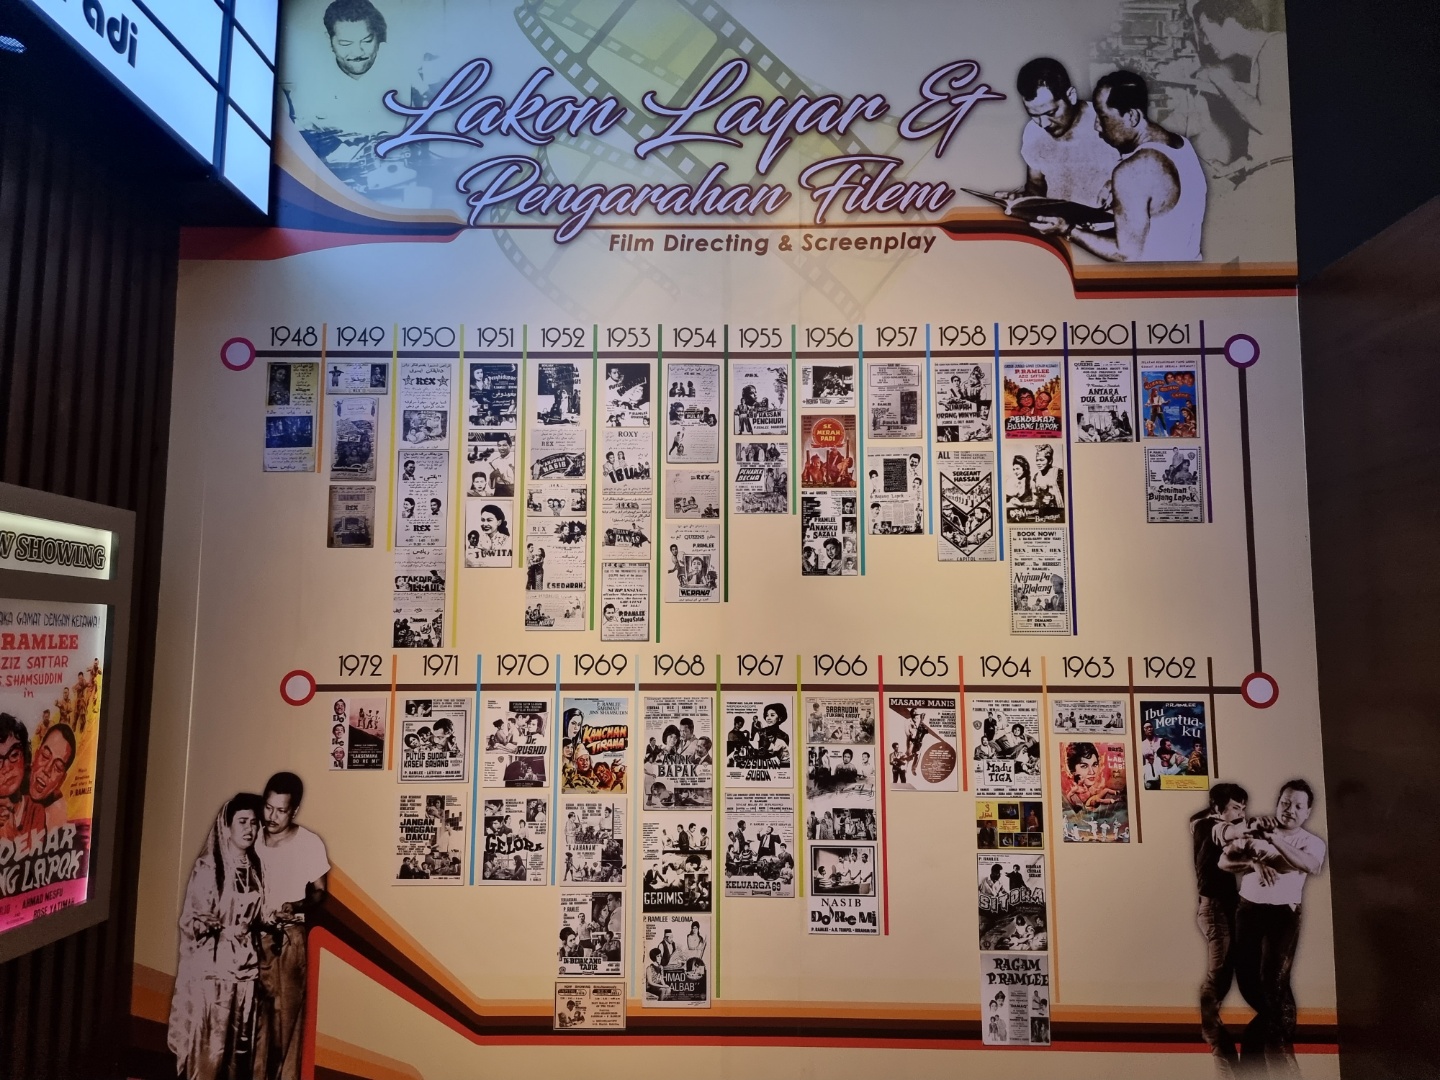 <말레이시아 영화 부흥기를 이끈 피람리가 1948년부터 1962년까지 참여한 영화 - 출처: 통신원 촬영>